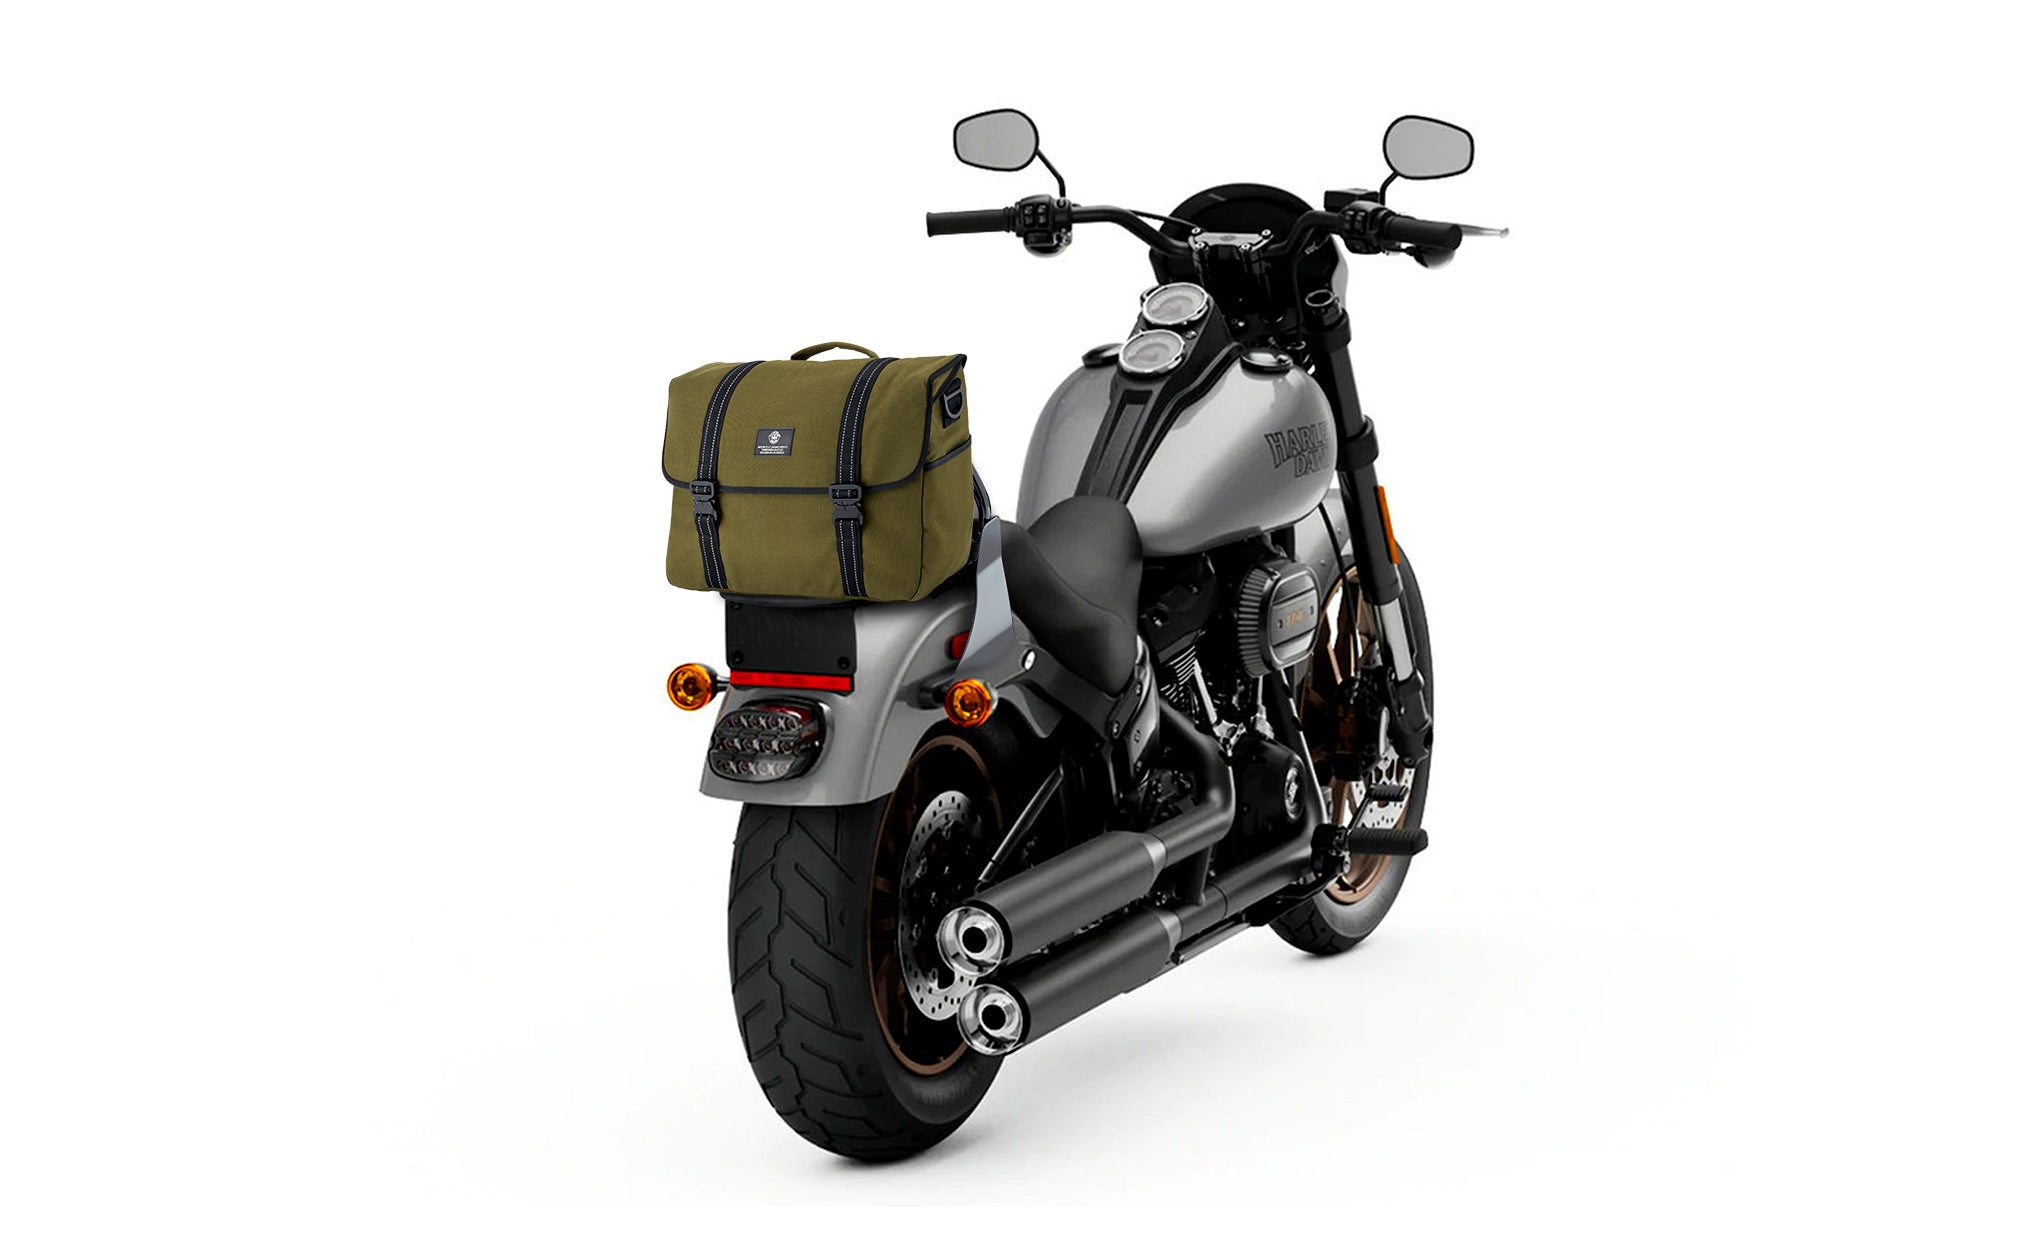 Viking Duo-tone Medium Kawasaki Motorcycle Messenger Bag Green/Black Bag on Bike View @expand